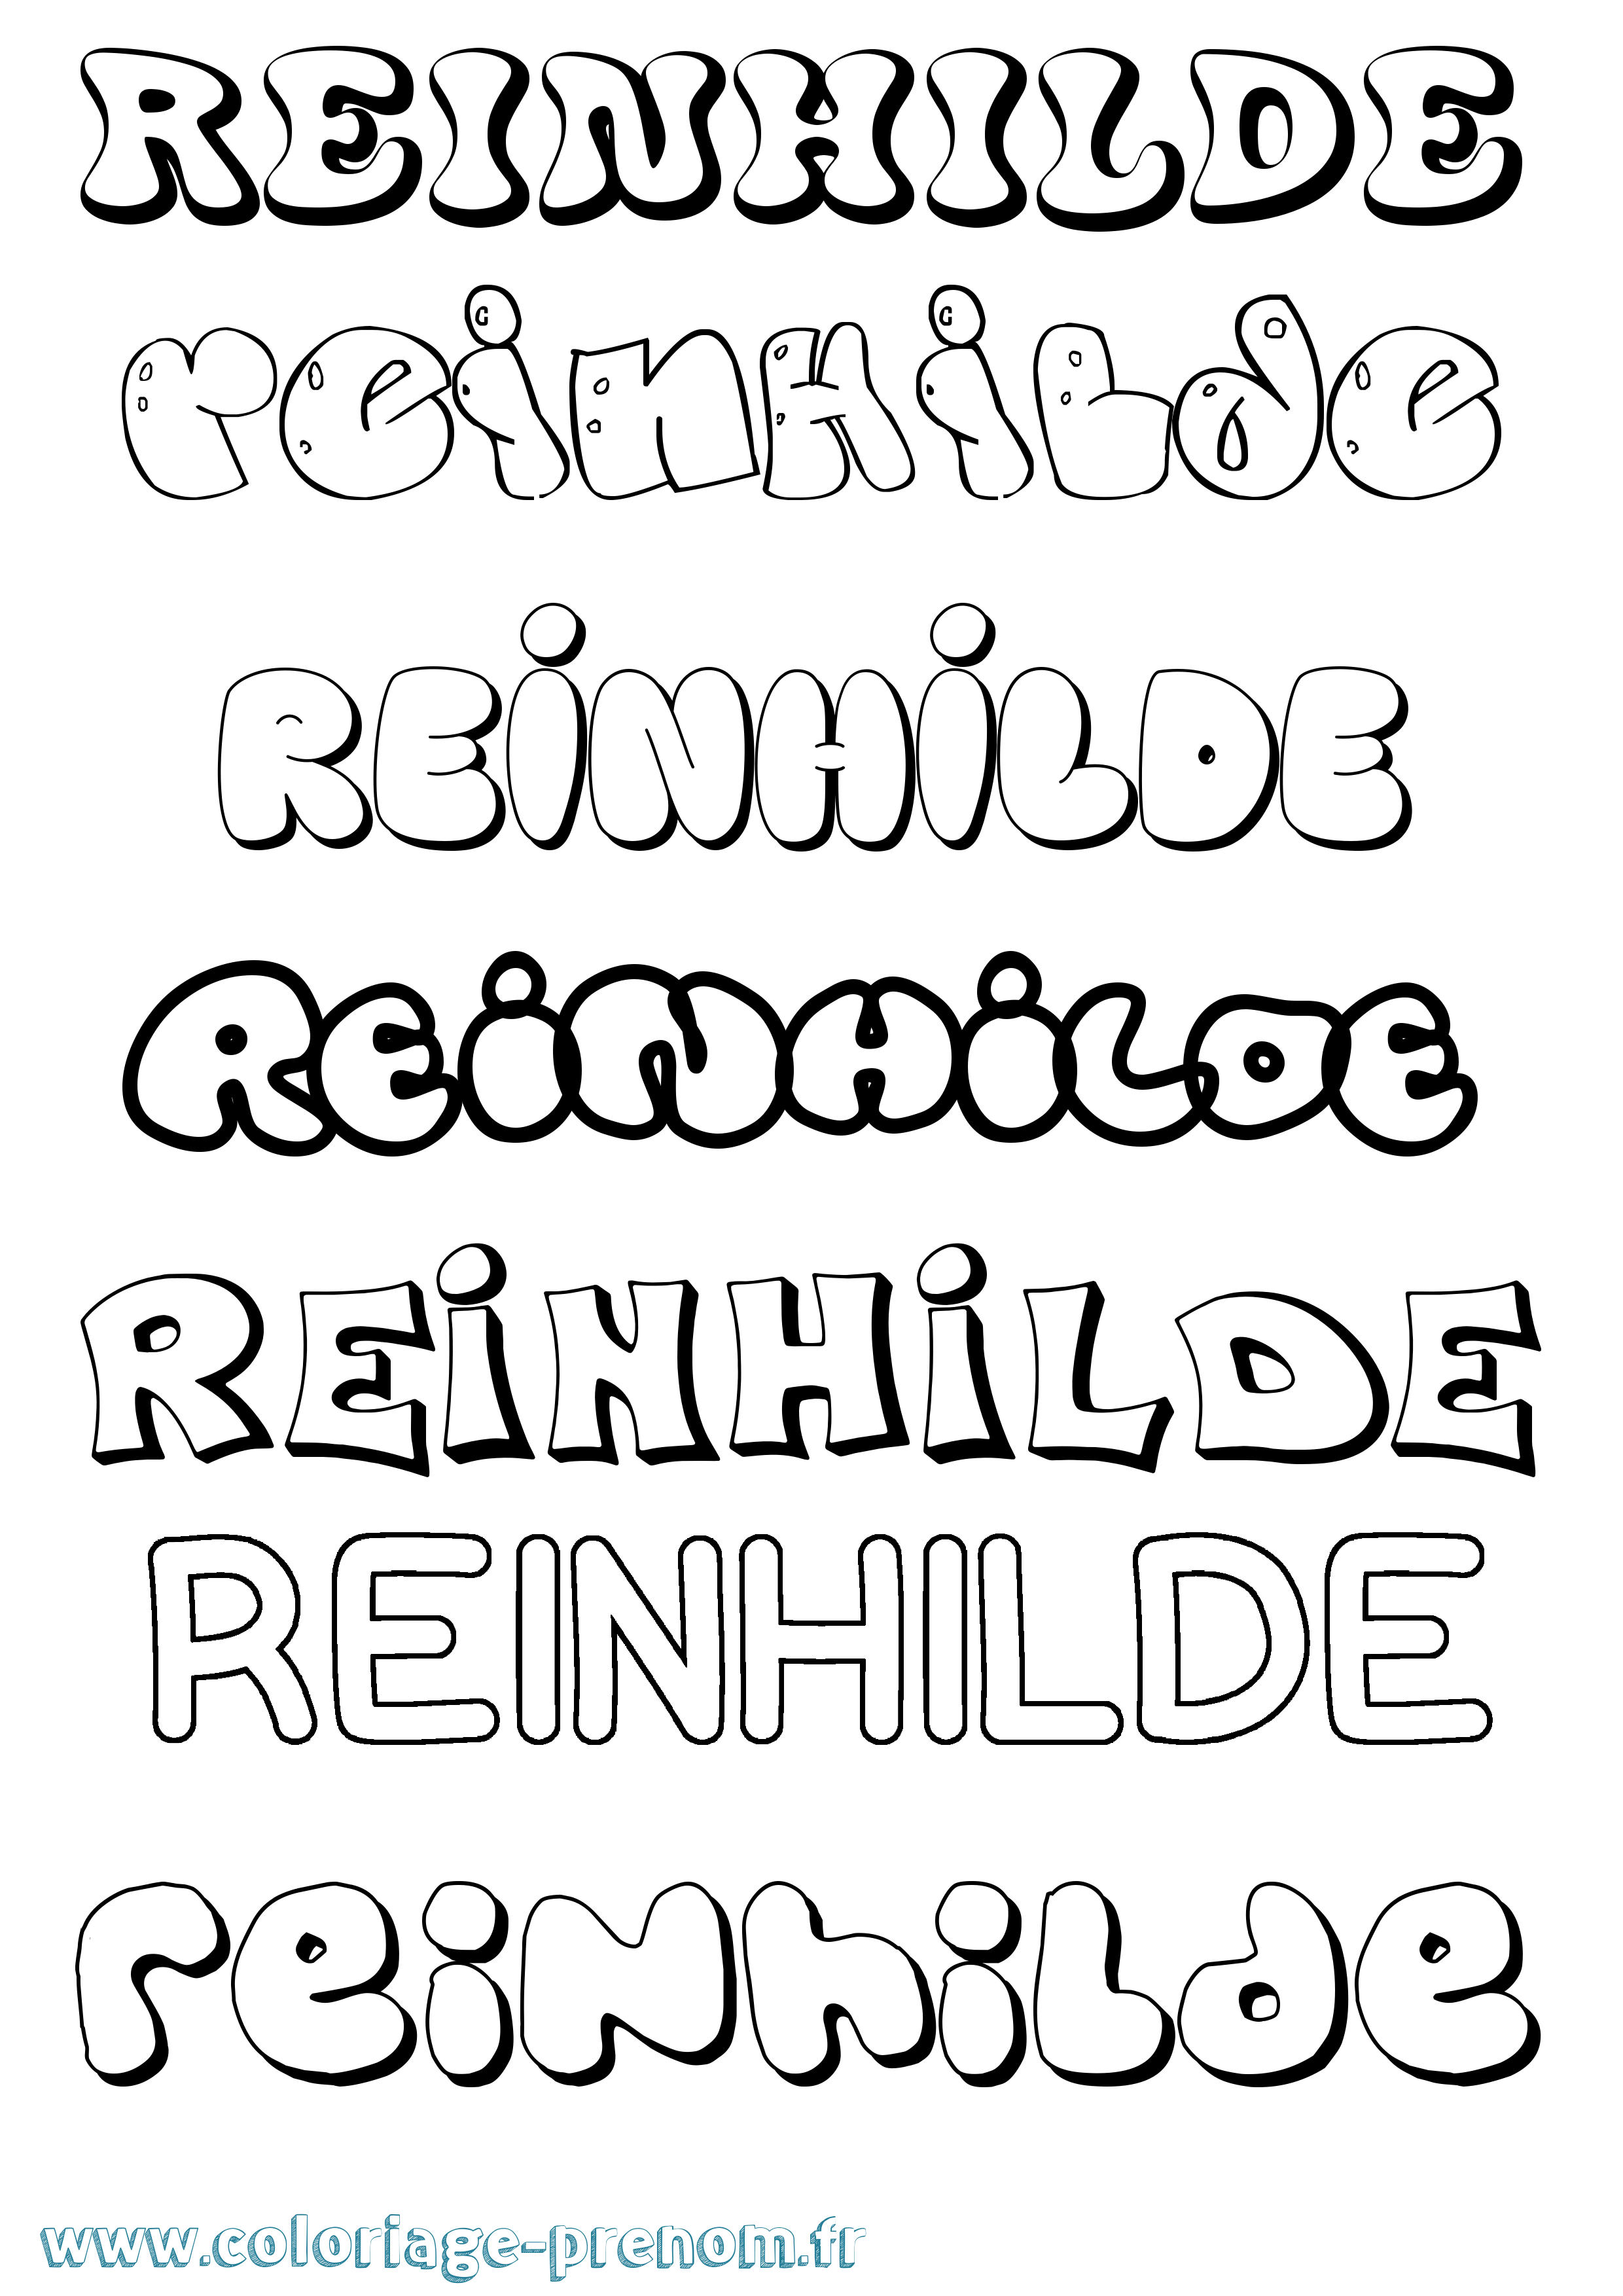 Coloriage prénom Reinhilde Bubble